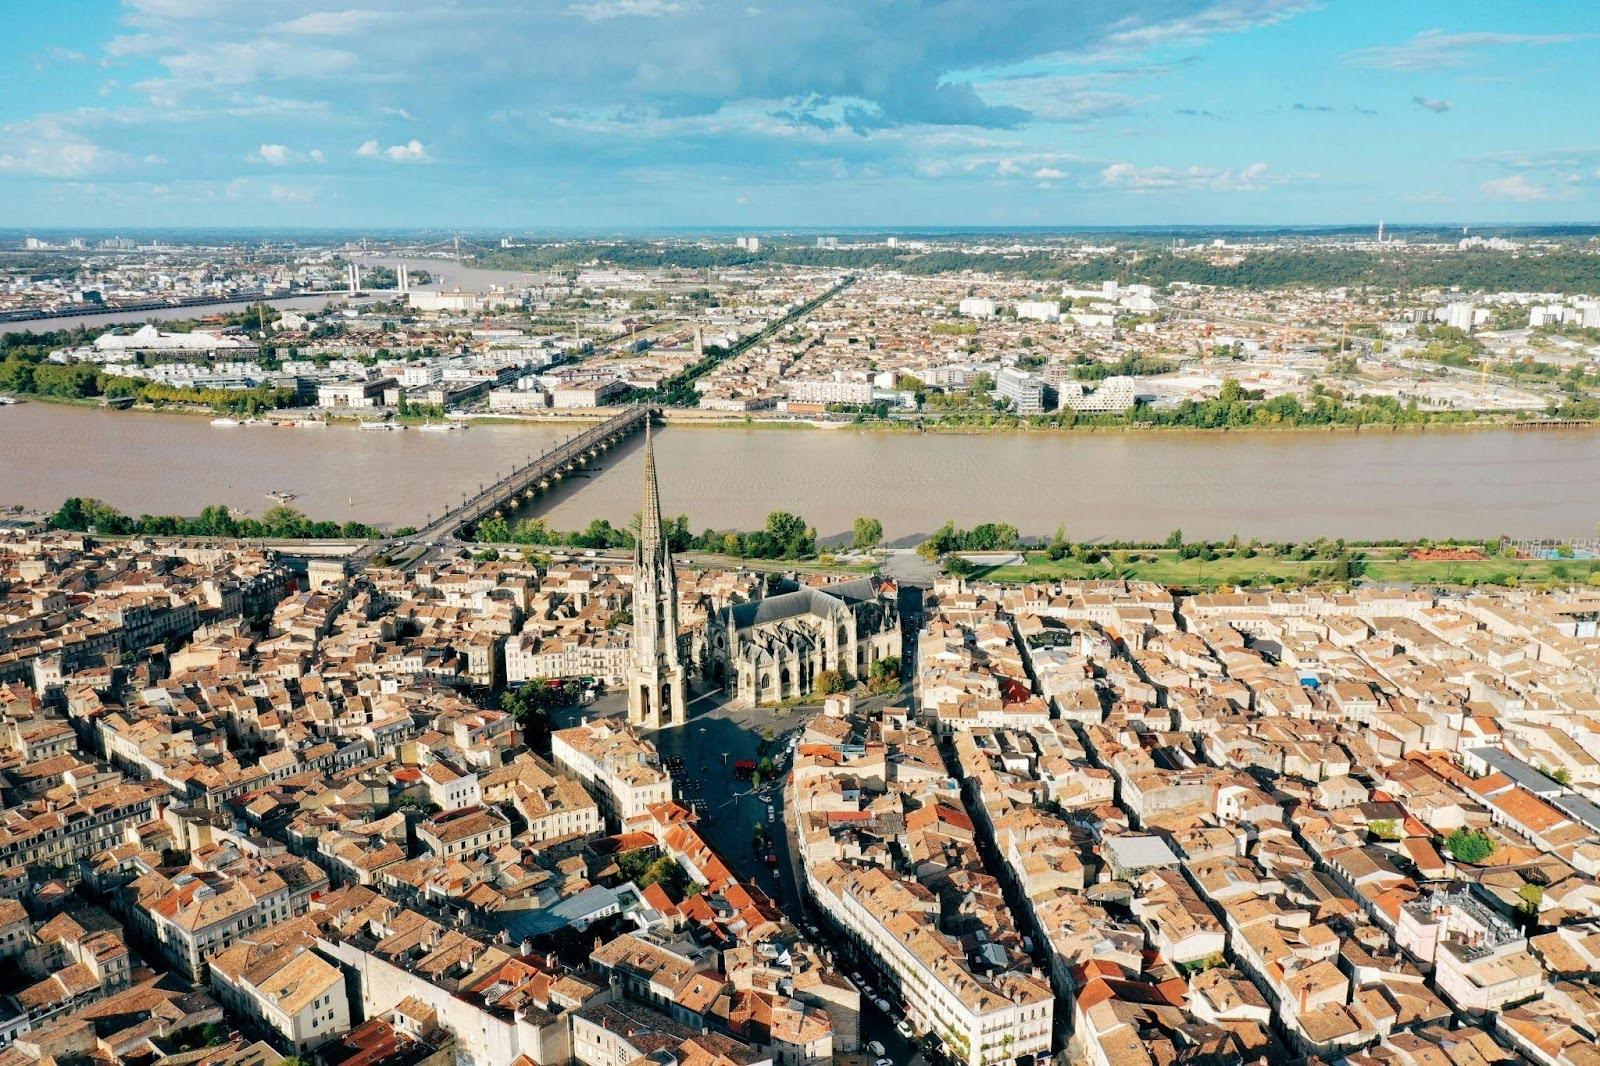 Picture of the Bordeaux region